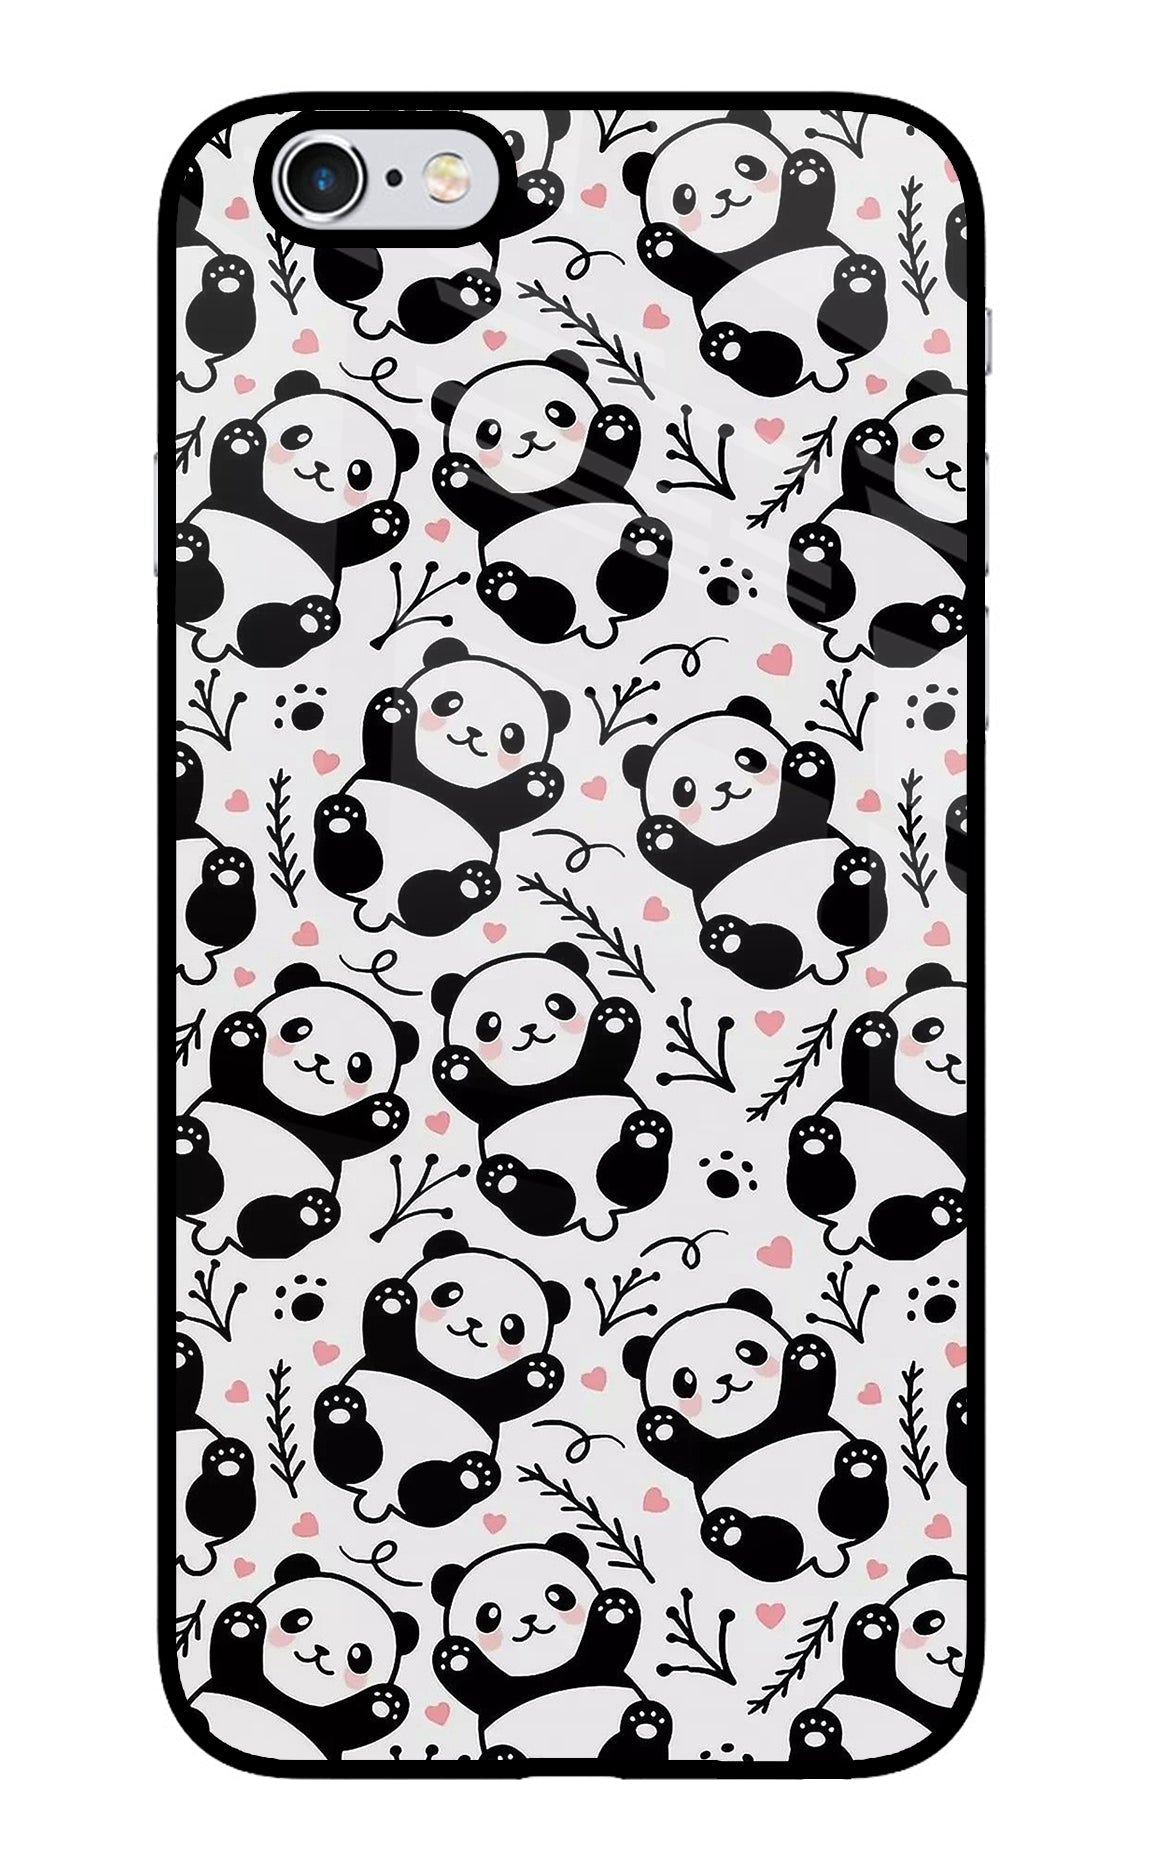 Cute Panda iPhone 6/6s Glass Case